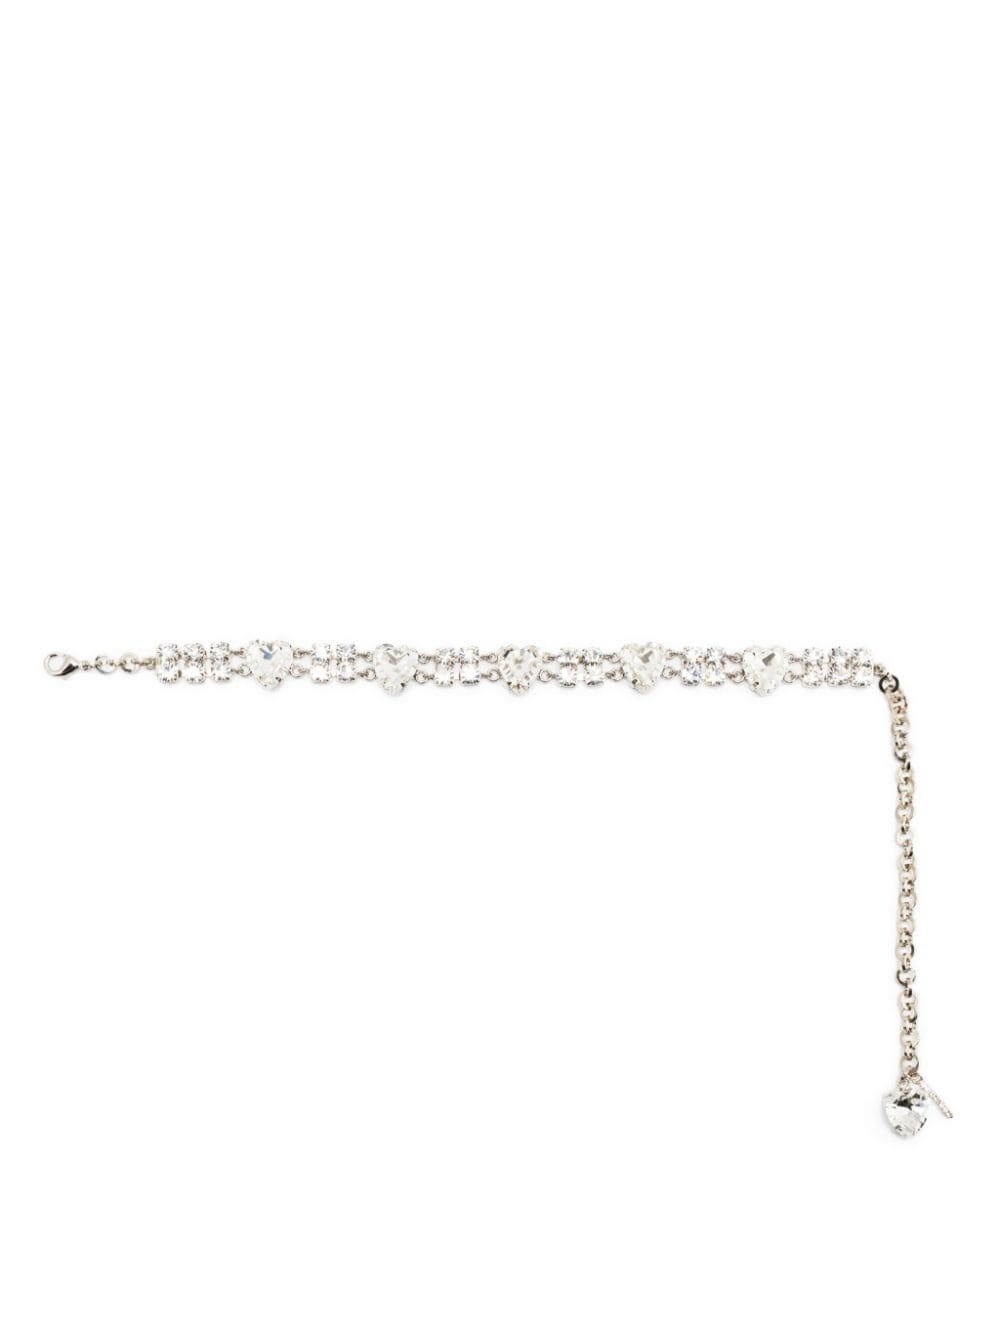 crystal-embellished choker necklace - 1